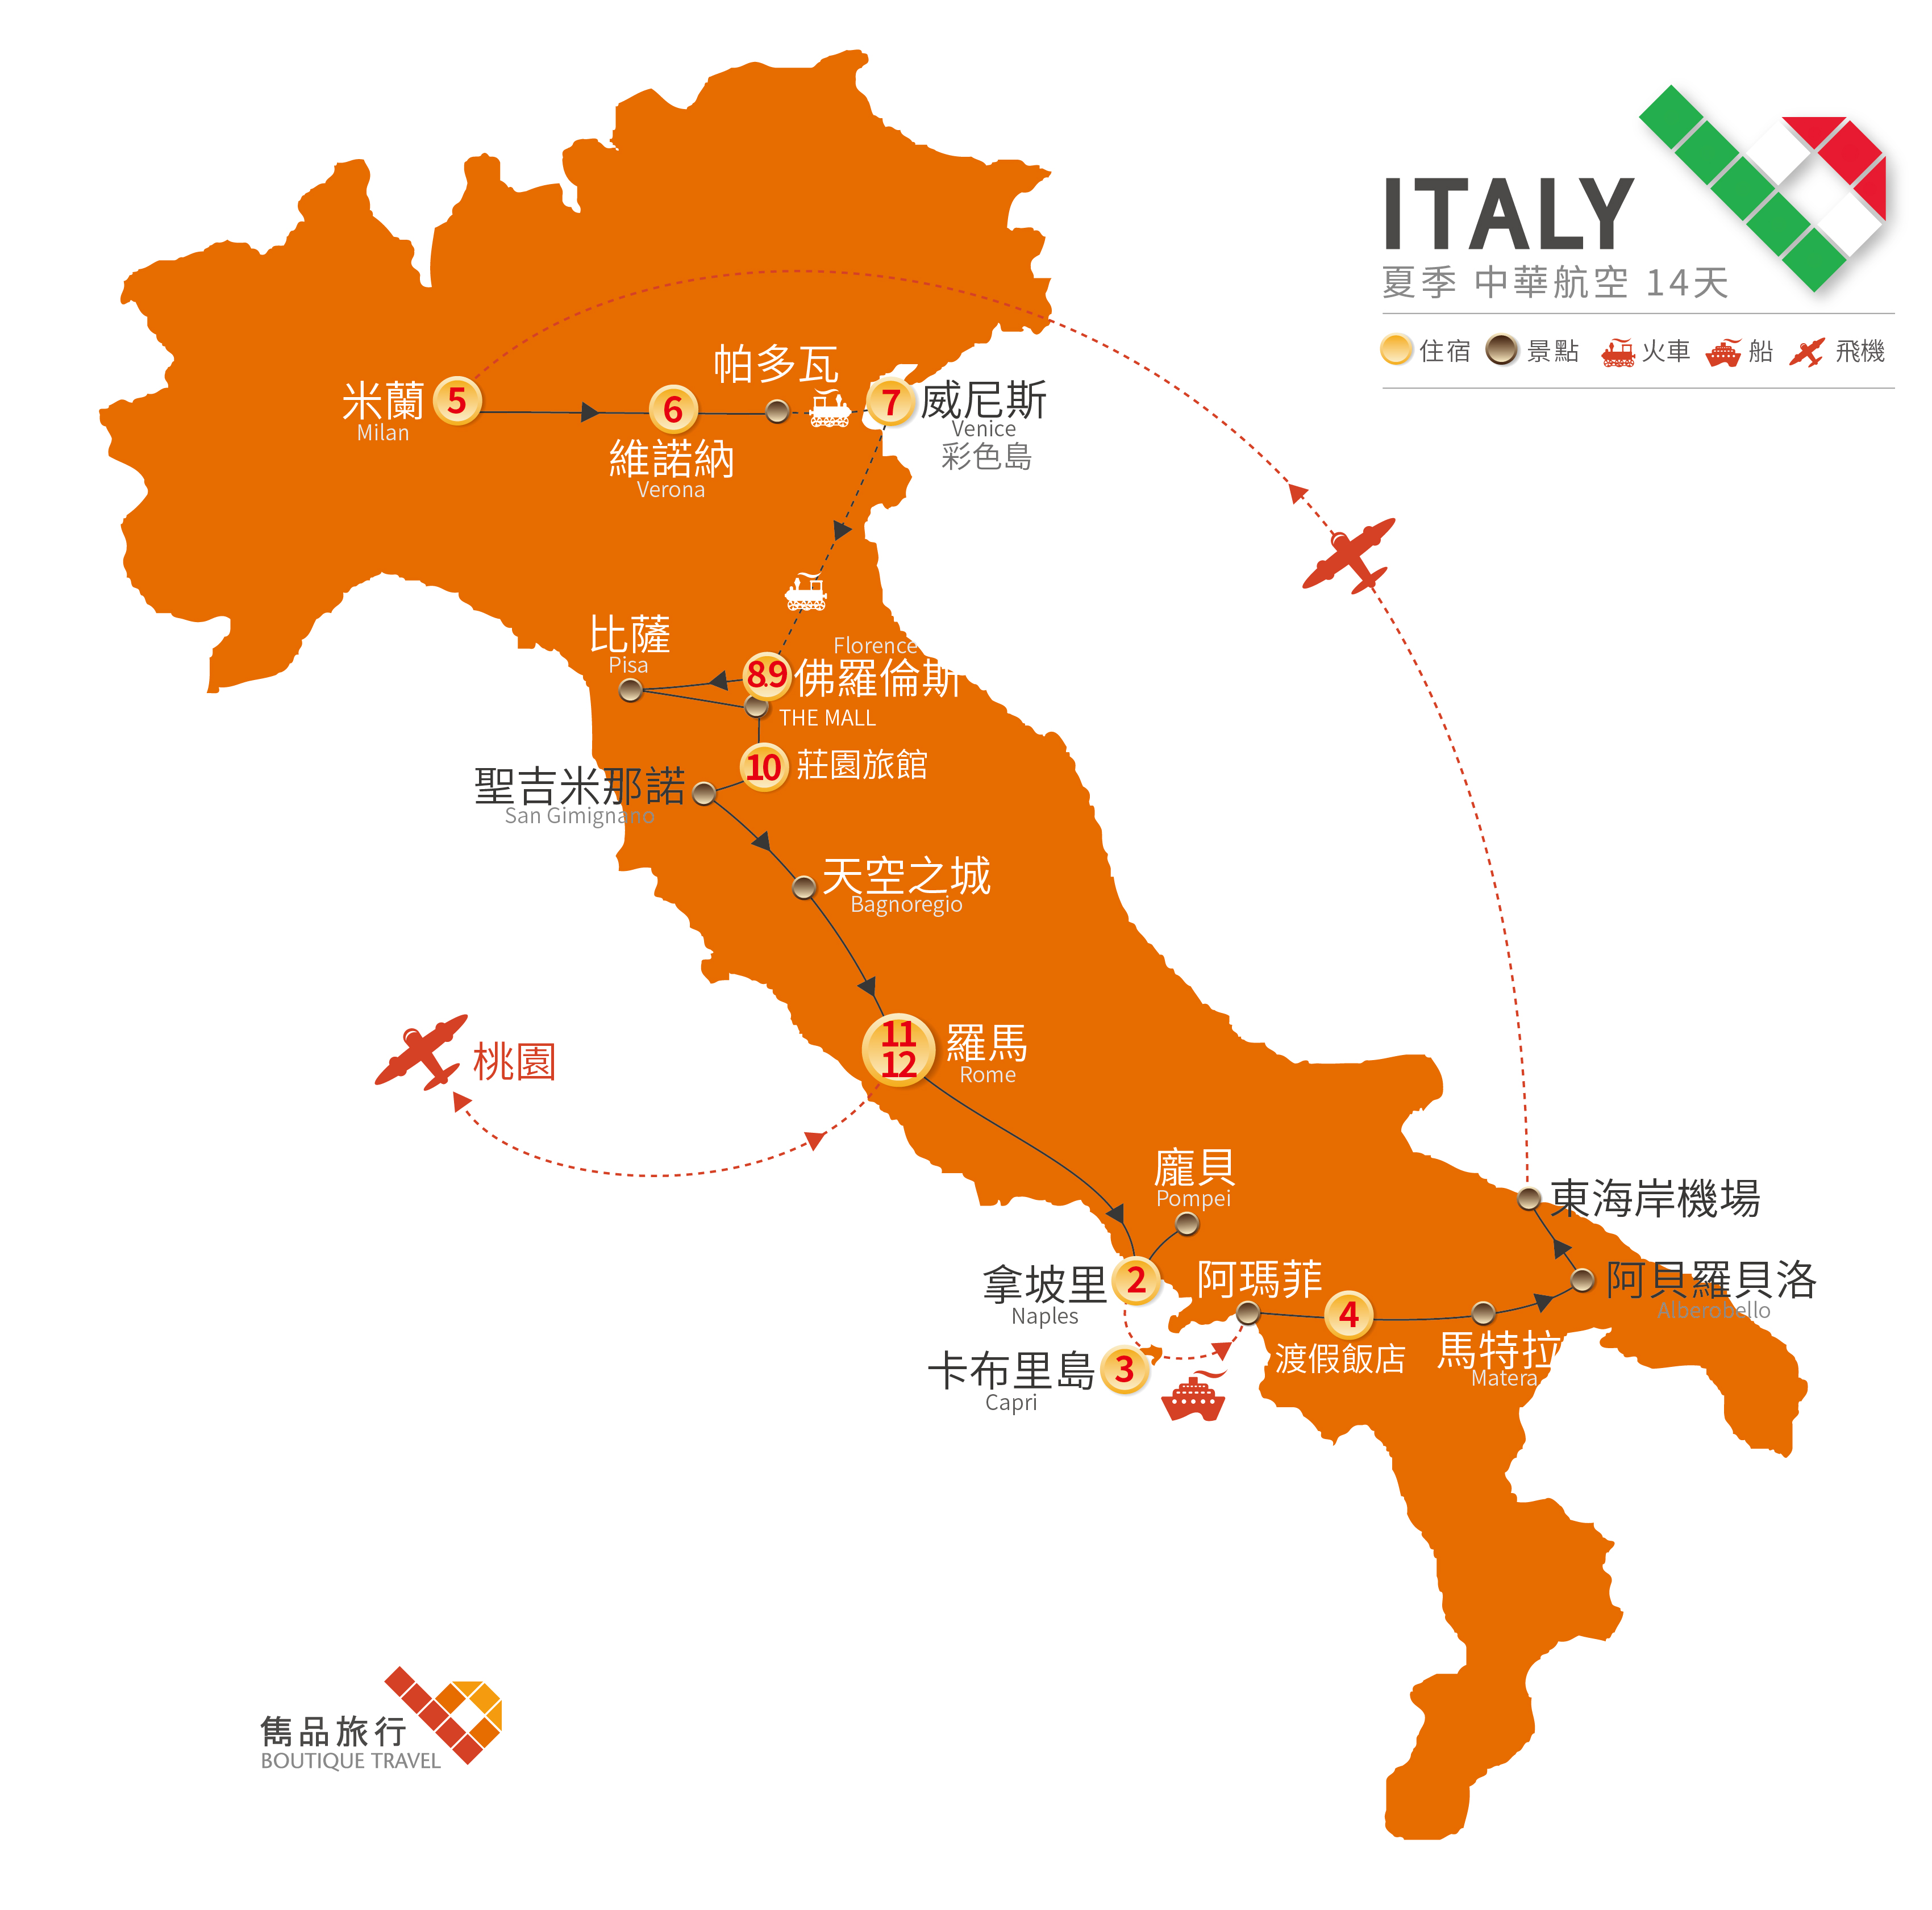 義大利 旅行地圖-夏季  經典漫遊 義國 14天